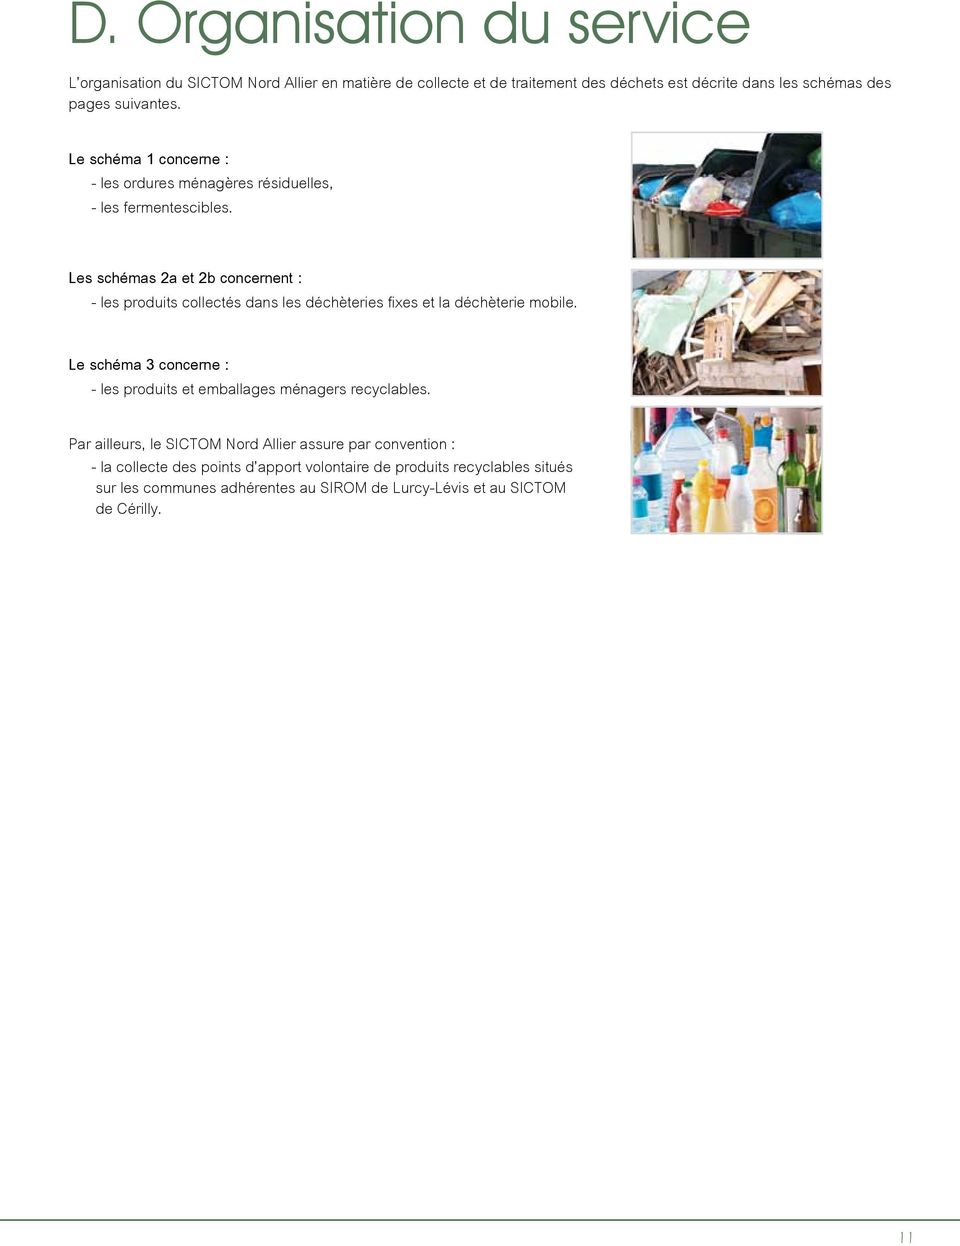 Les schémas 2a et 2b concernent : - les produits collectés dans les déchèteries fixes et la déchèterie mobile.